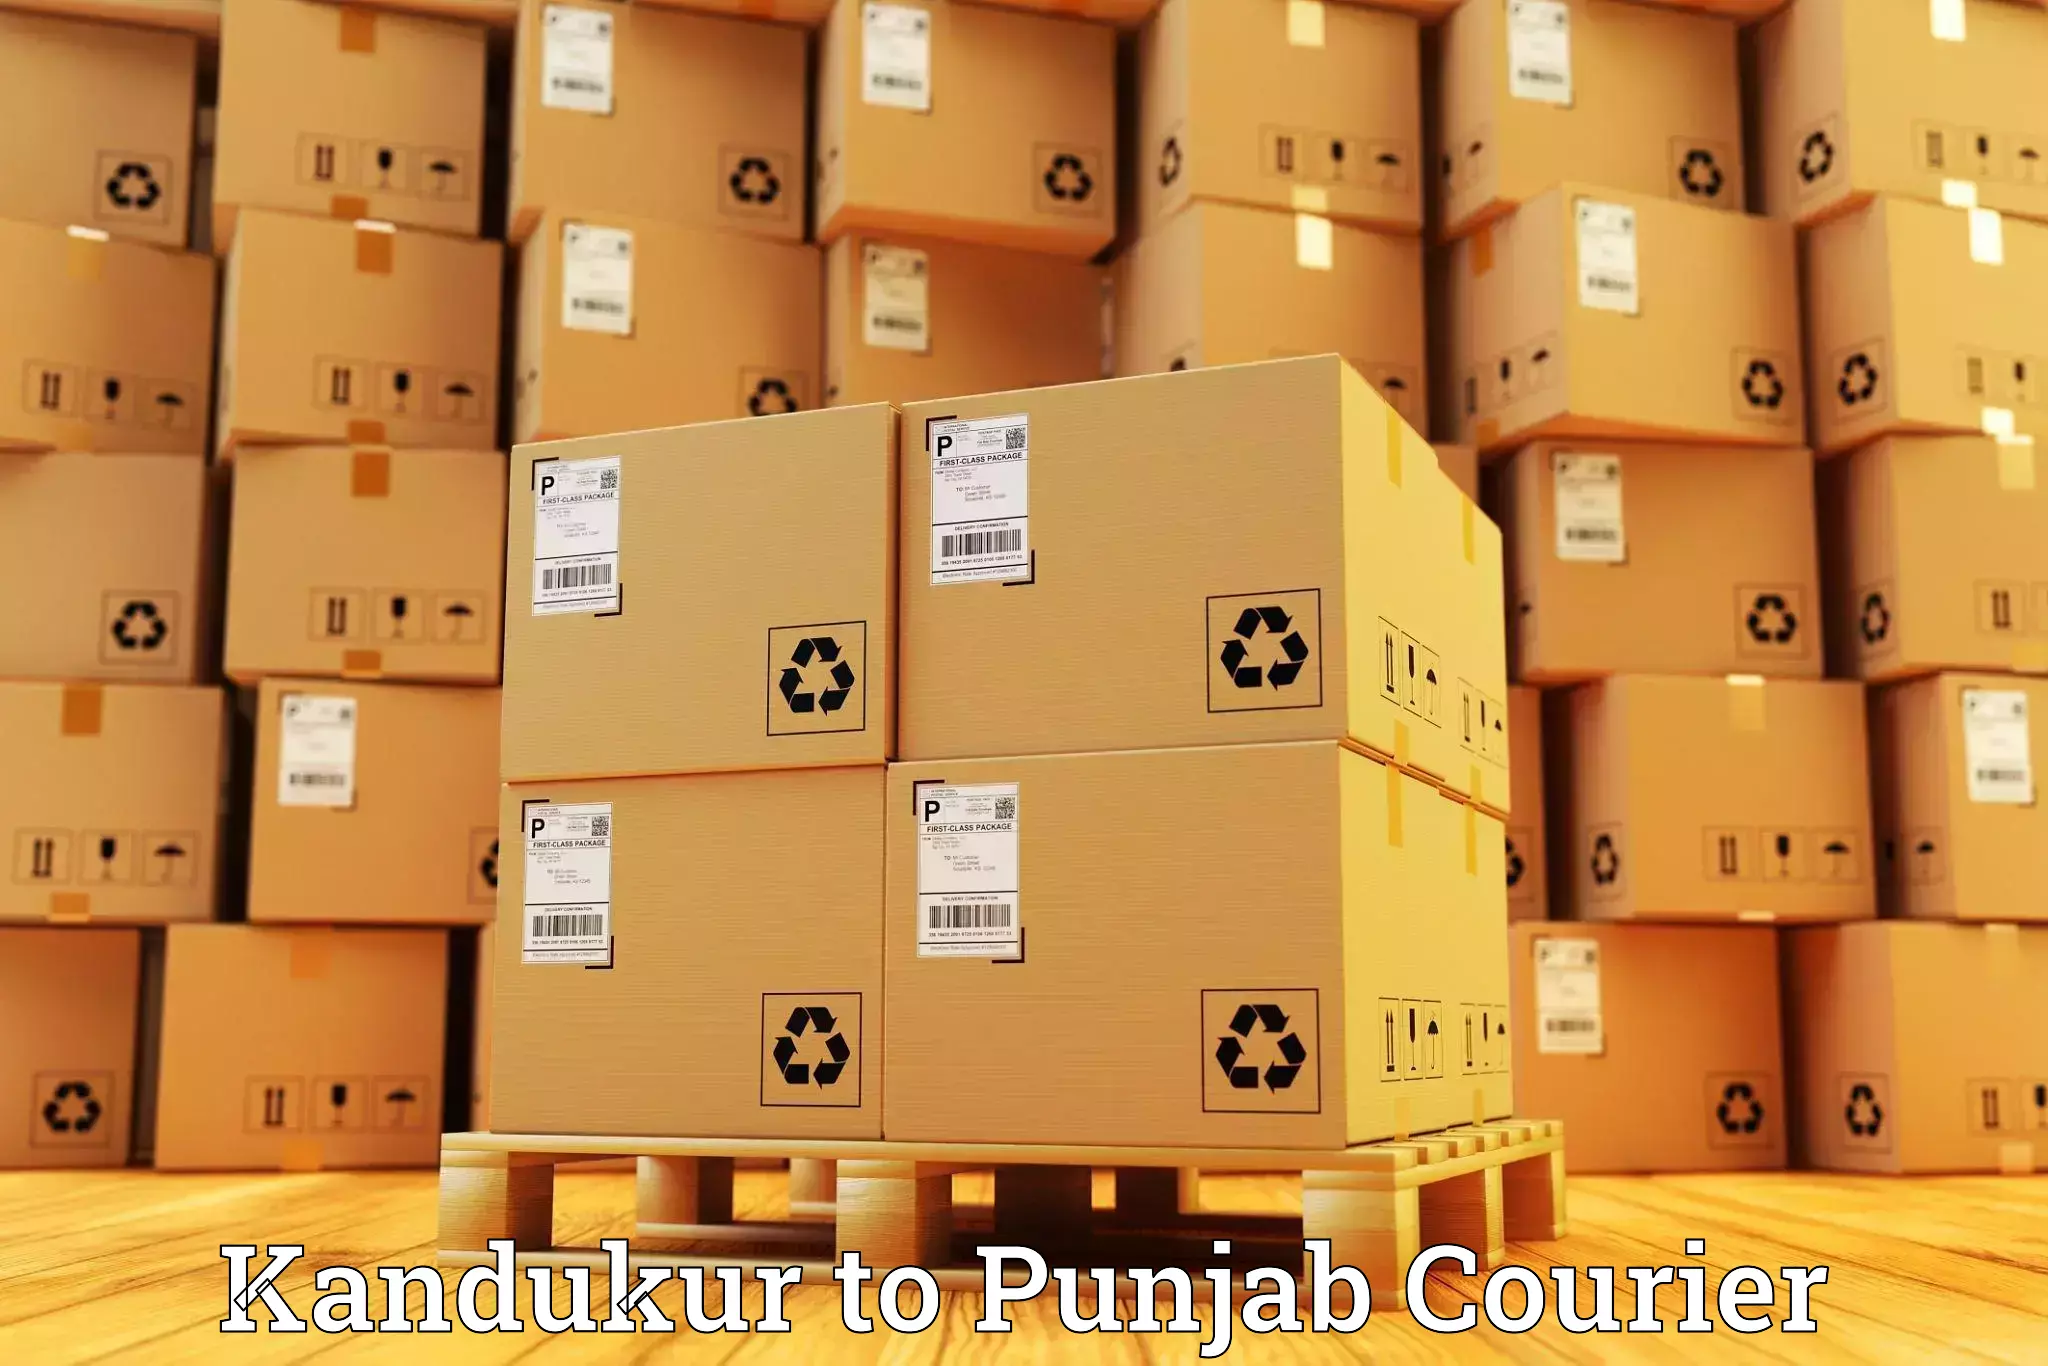 High-performance logistics Kandukur to Faridkot